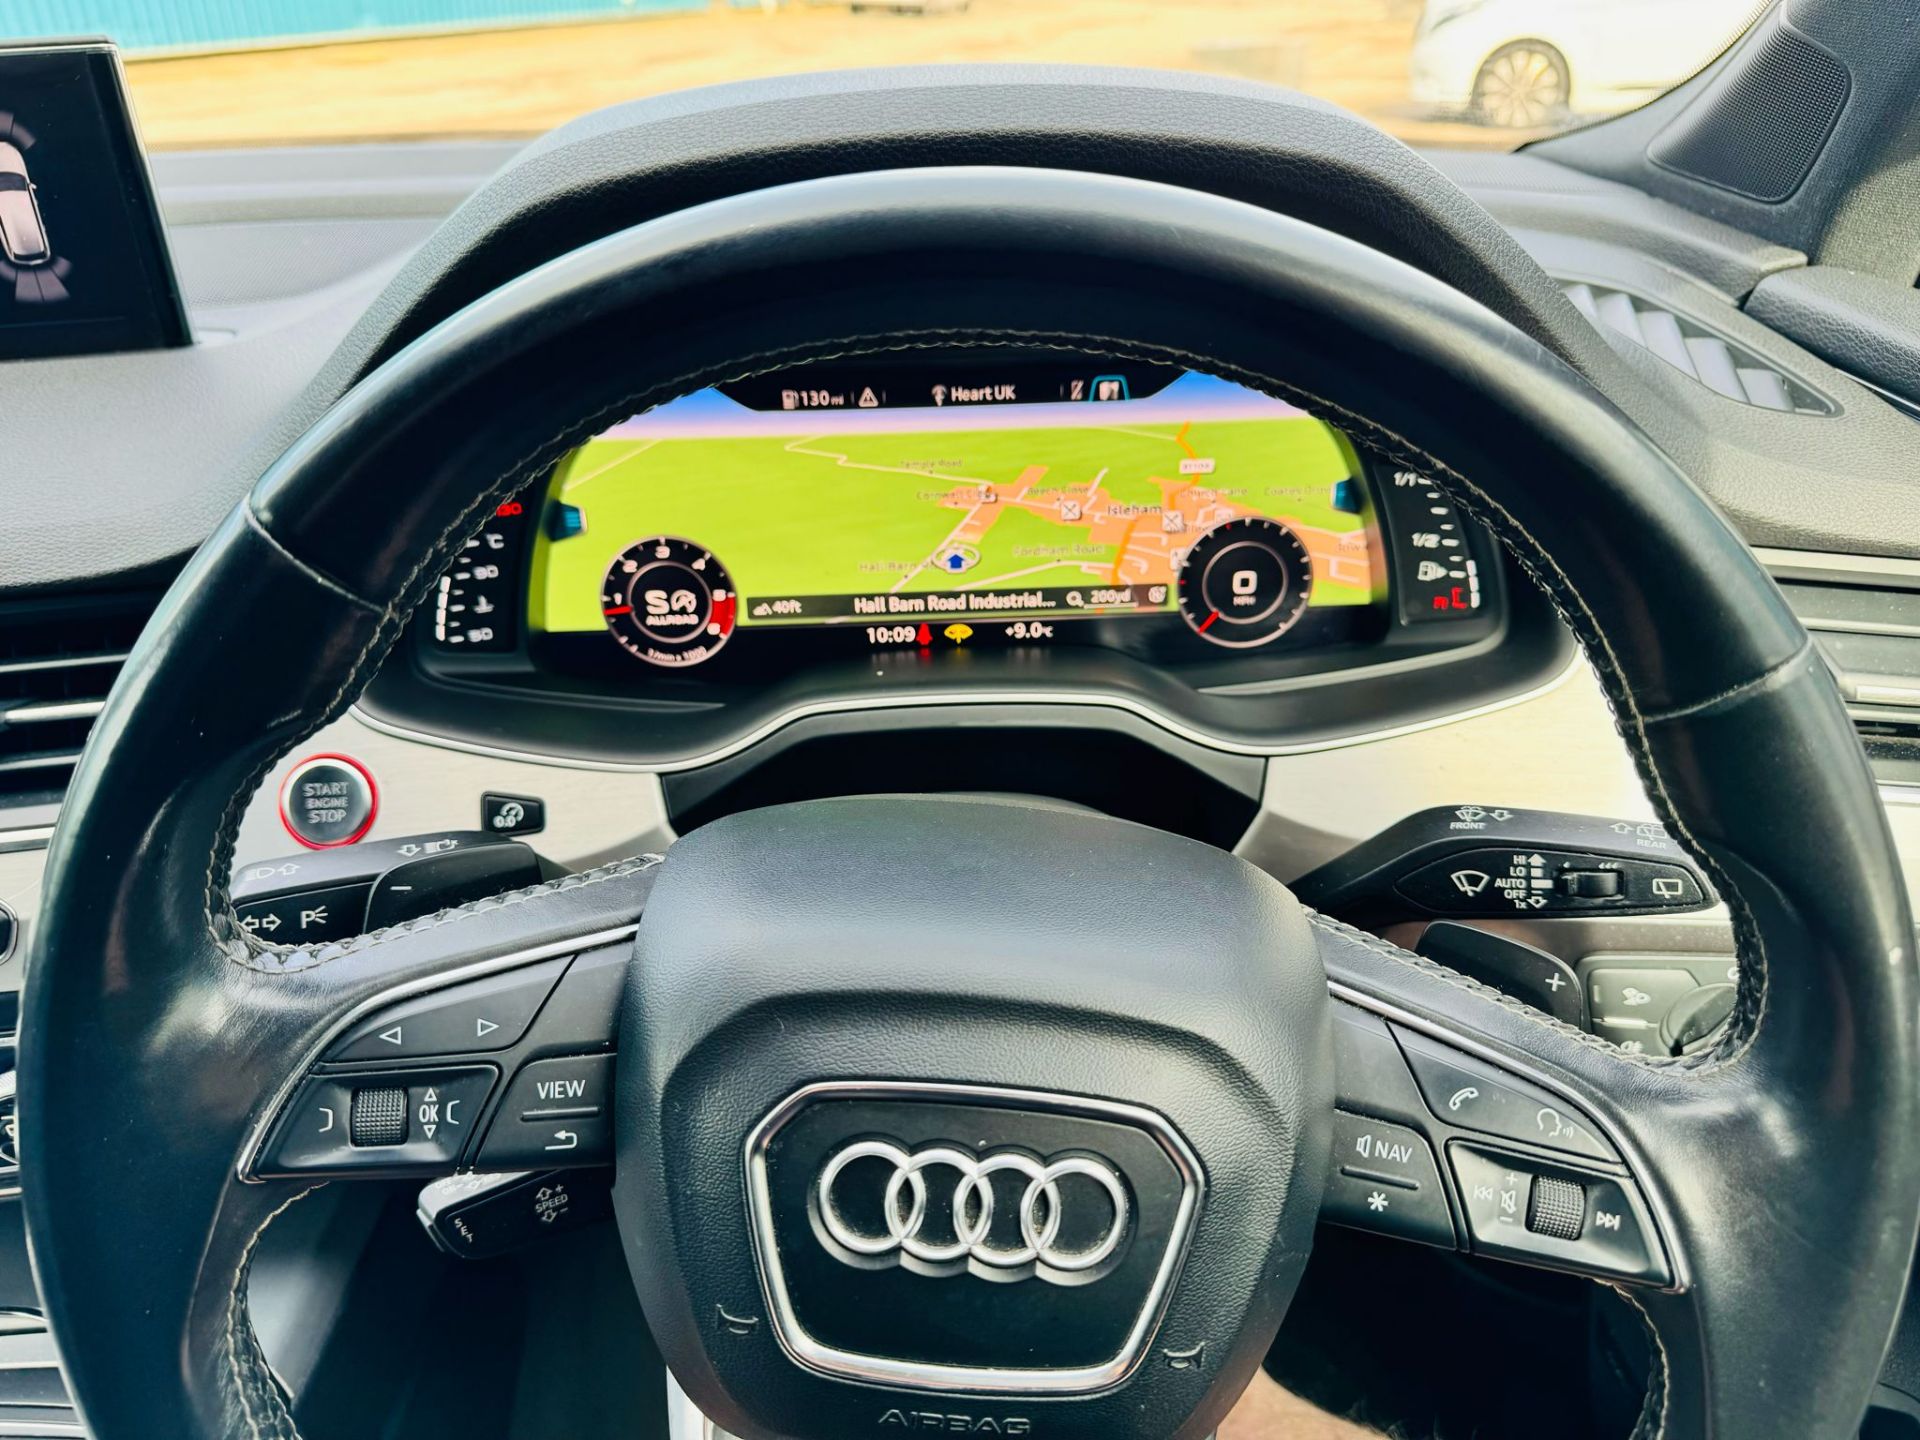 Audi SQ7 4.0TDI V8 Quattro 430BHP "SQ7 EDITION" Auto (7 Seats) 2018 18Reg -Sat Nav -Reversing camera - Image 21 of 38